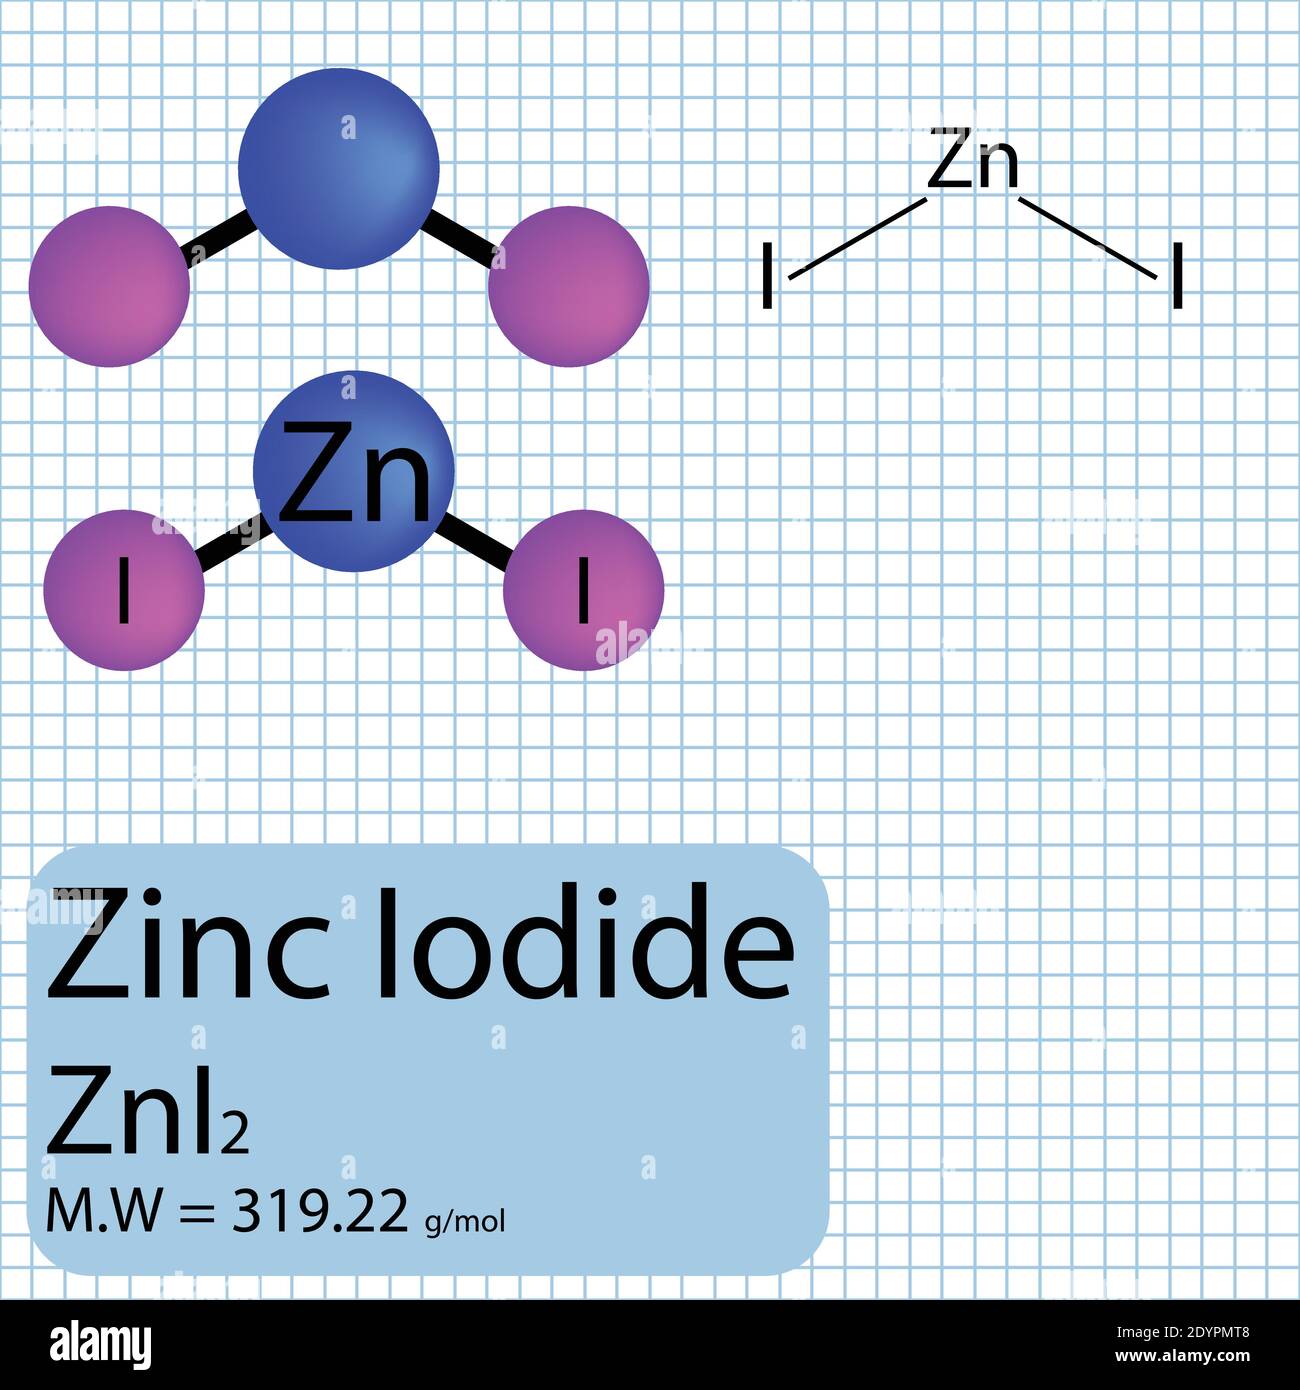 Zink Iodide Molekül Ball und Stick Modell mit chemischer Struktur auf Schulpapier Hintergrund. Anorganische ZnI2-Verbindung mit Molekulargewicht. Stock Vektor